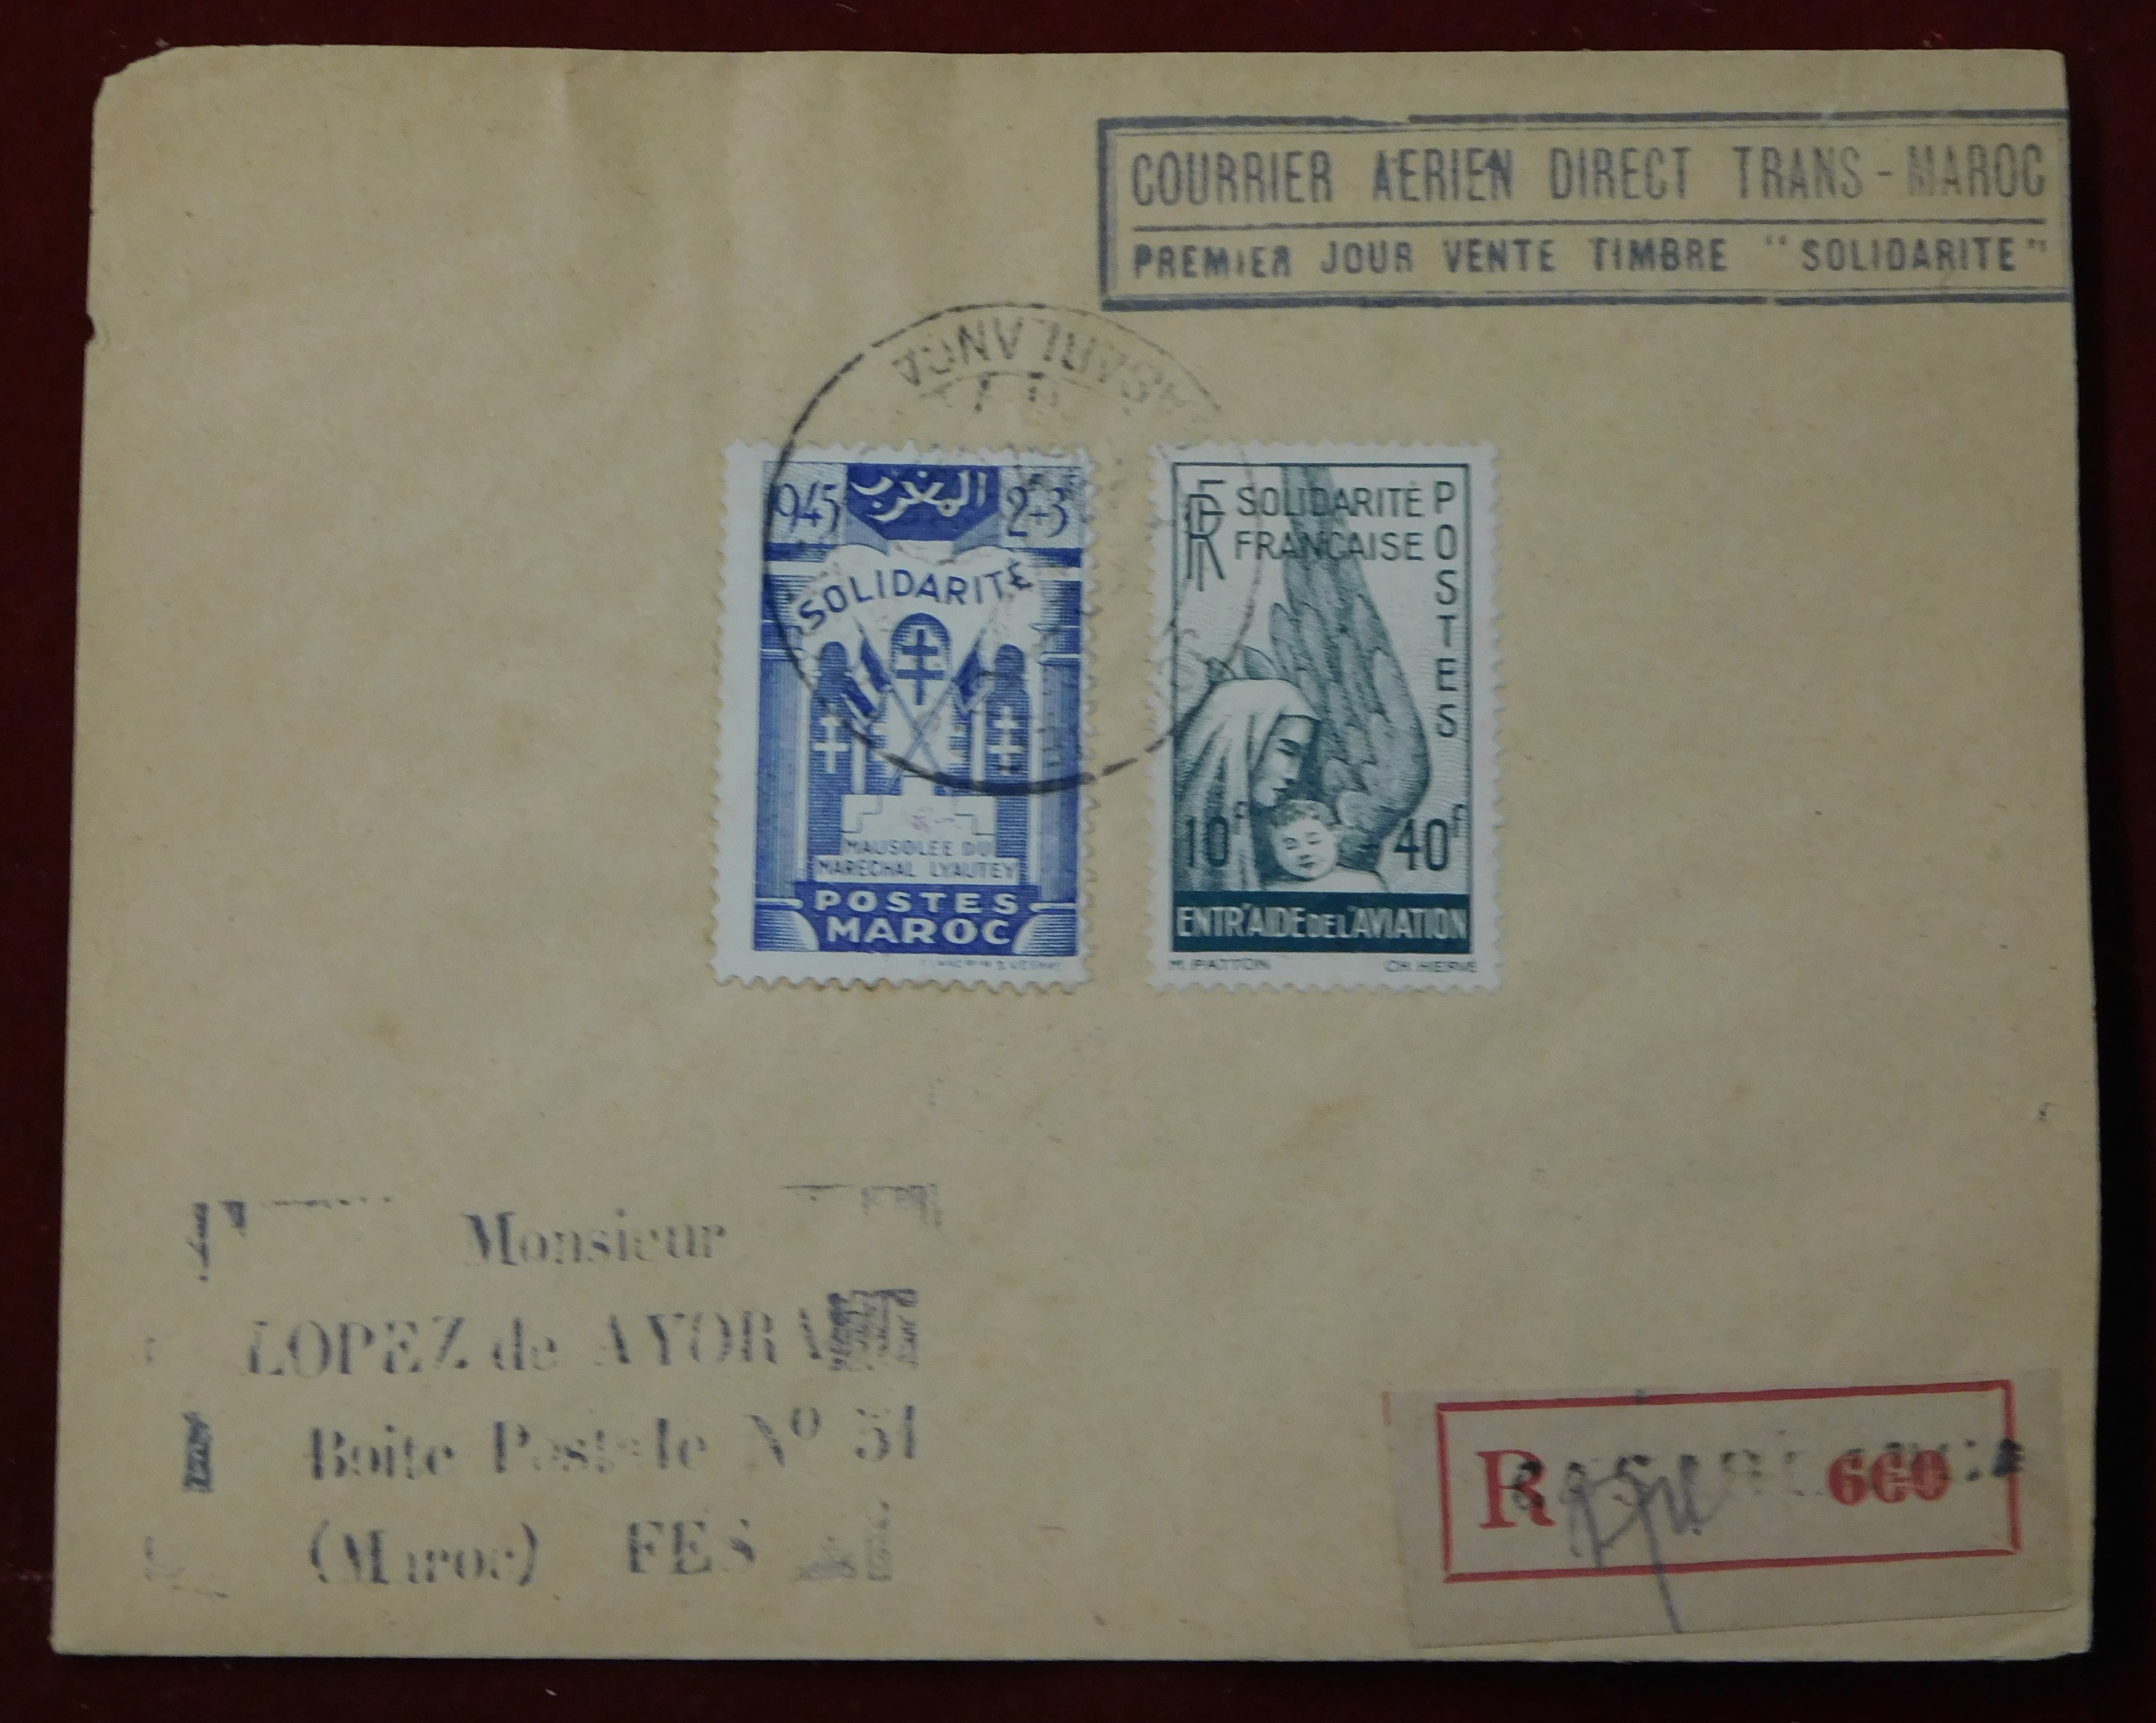 Morocco 1945 Env Registered Casablanca to Fes "Courier Aerien Direct Trans-Maroc Premier Jour